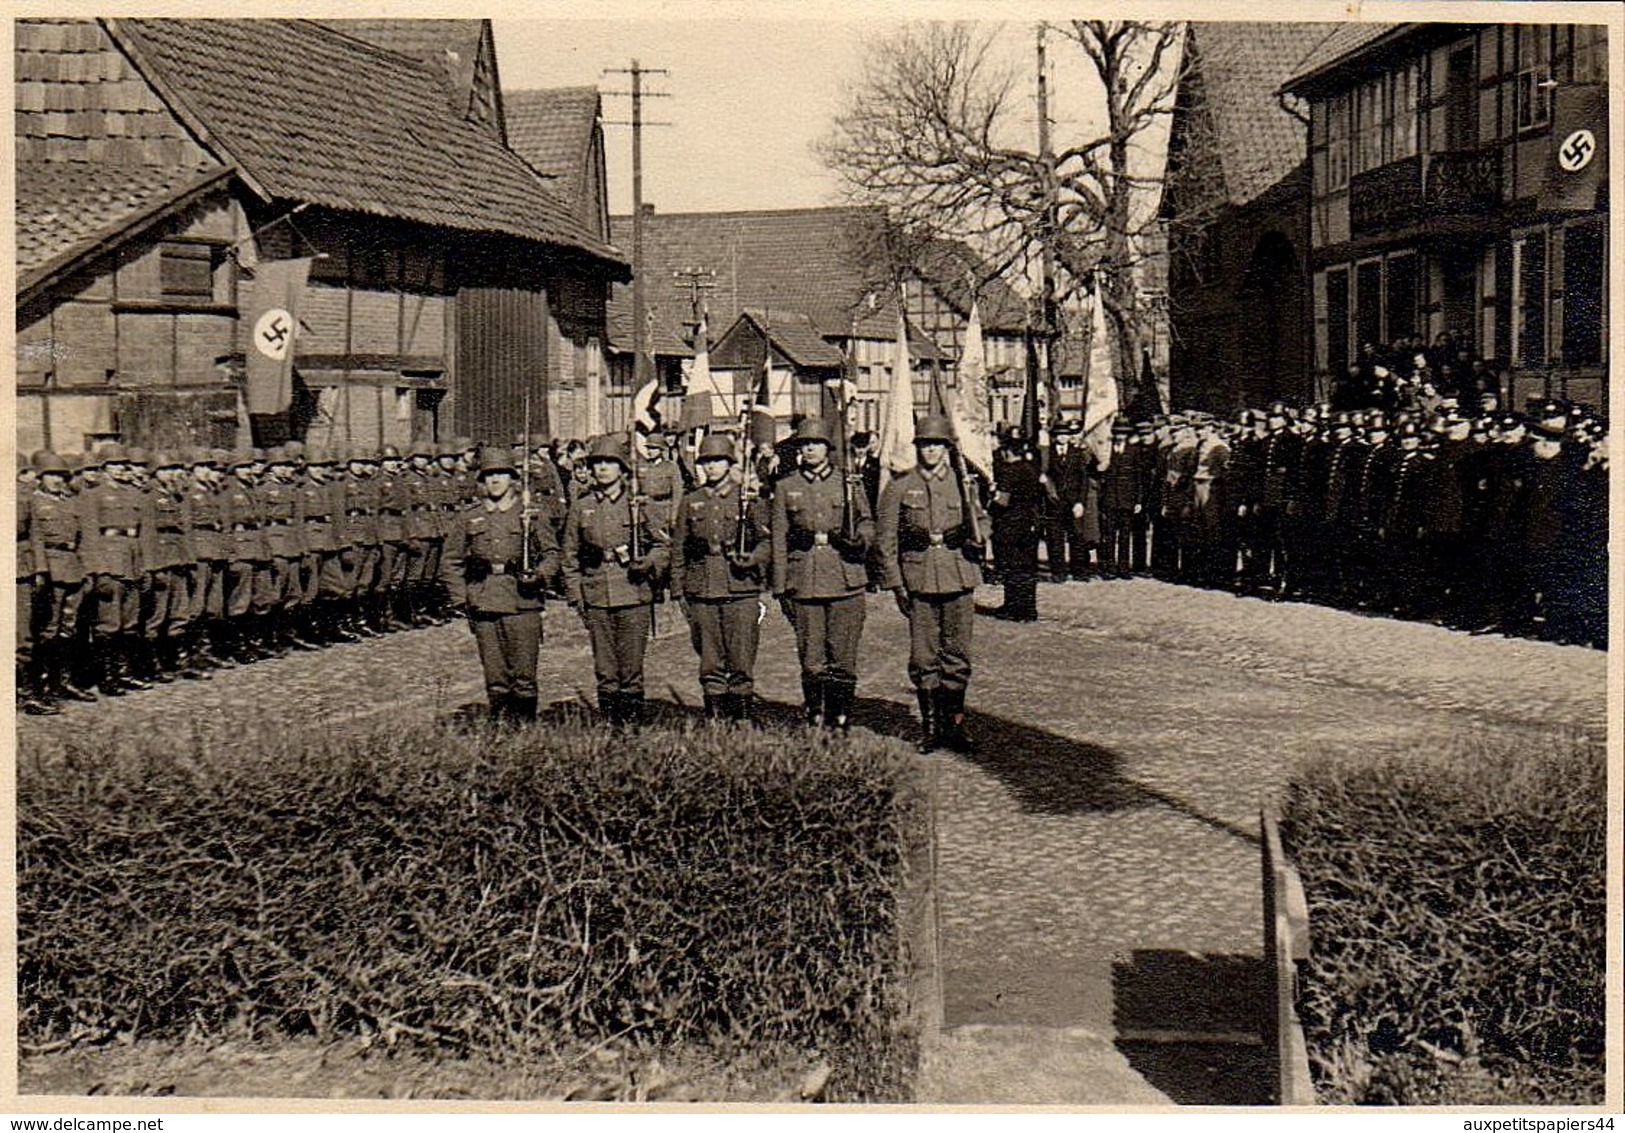 5 Photos Originales Guerre 1939-45 - Hommage & Commémoration de la Guerre 1914/1918 dans un Village Occupé